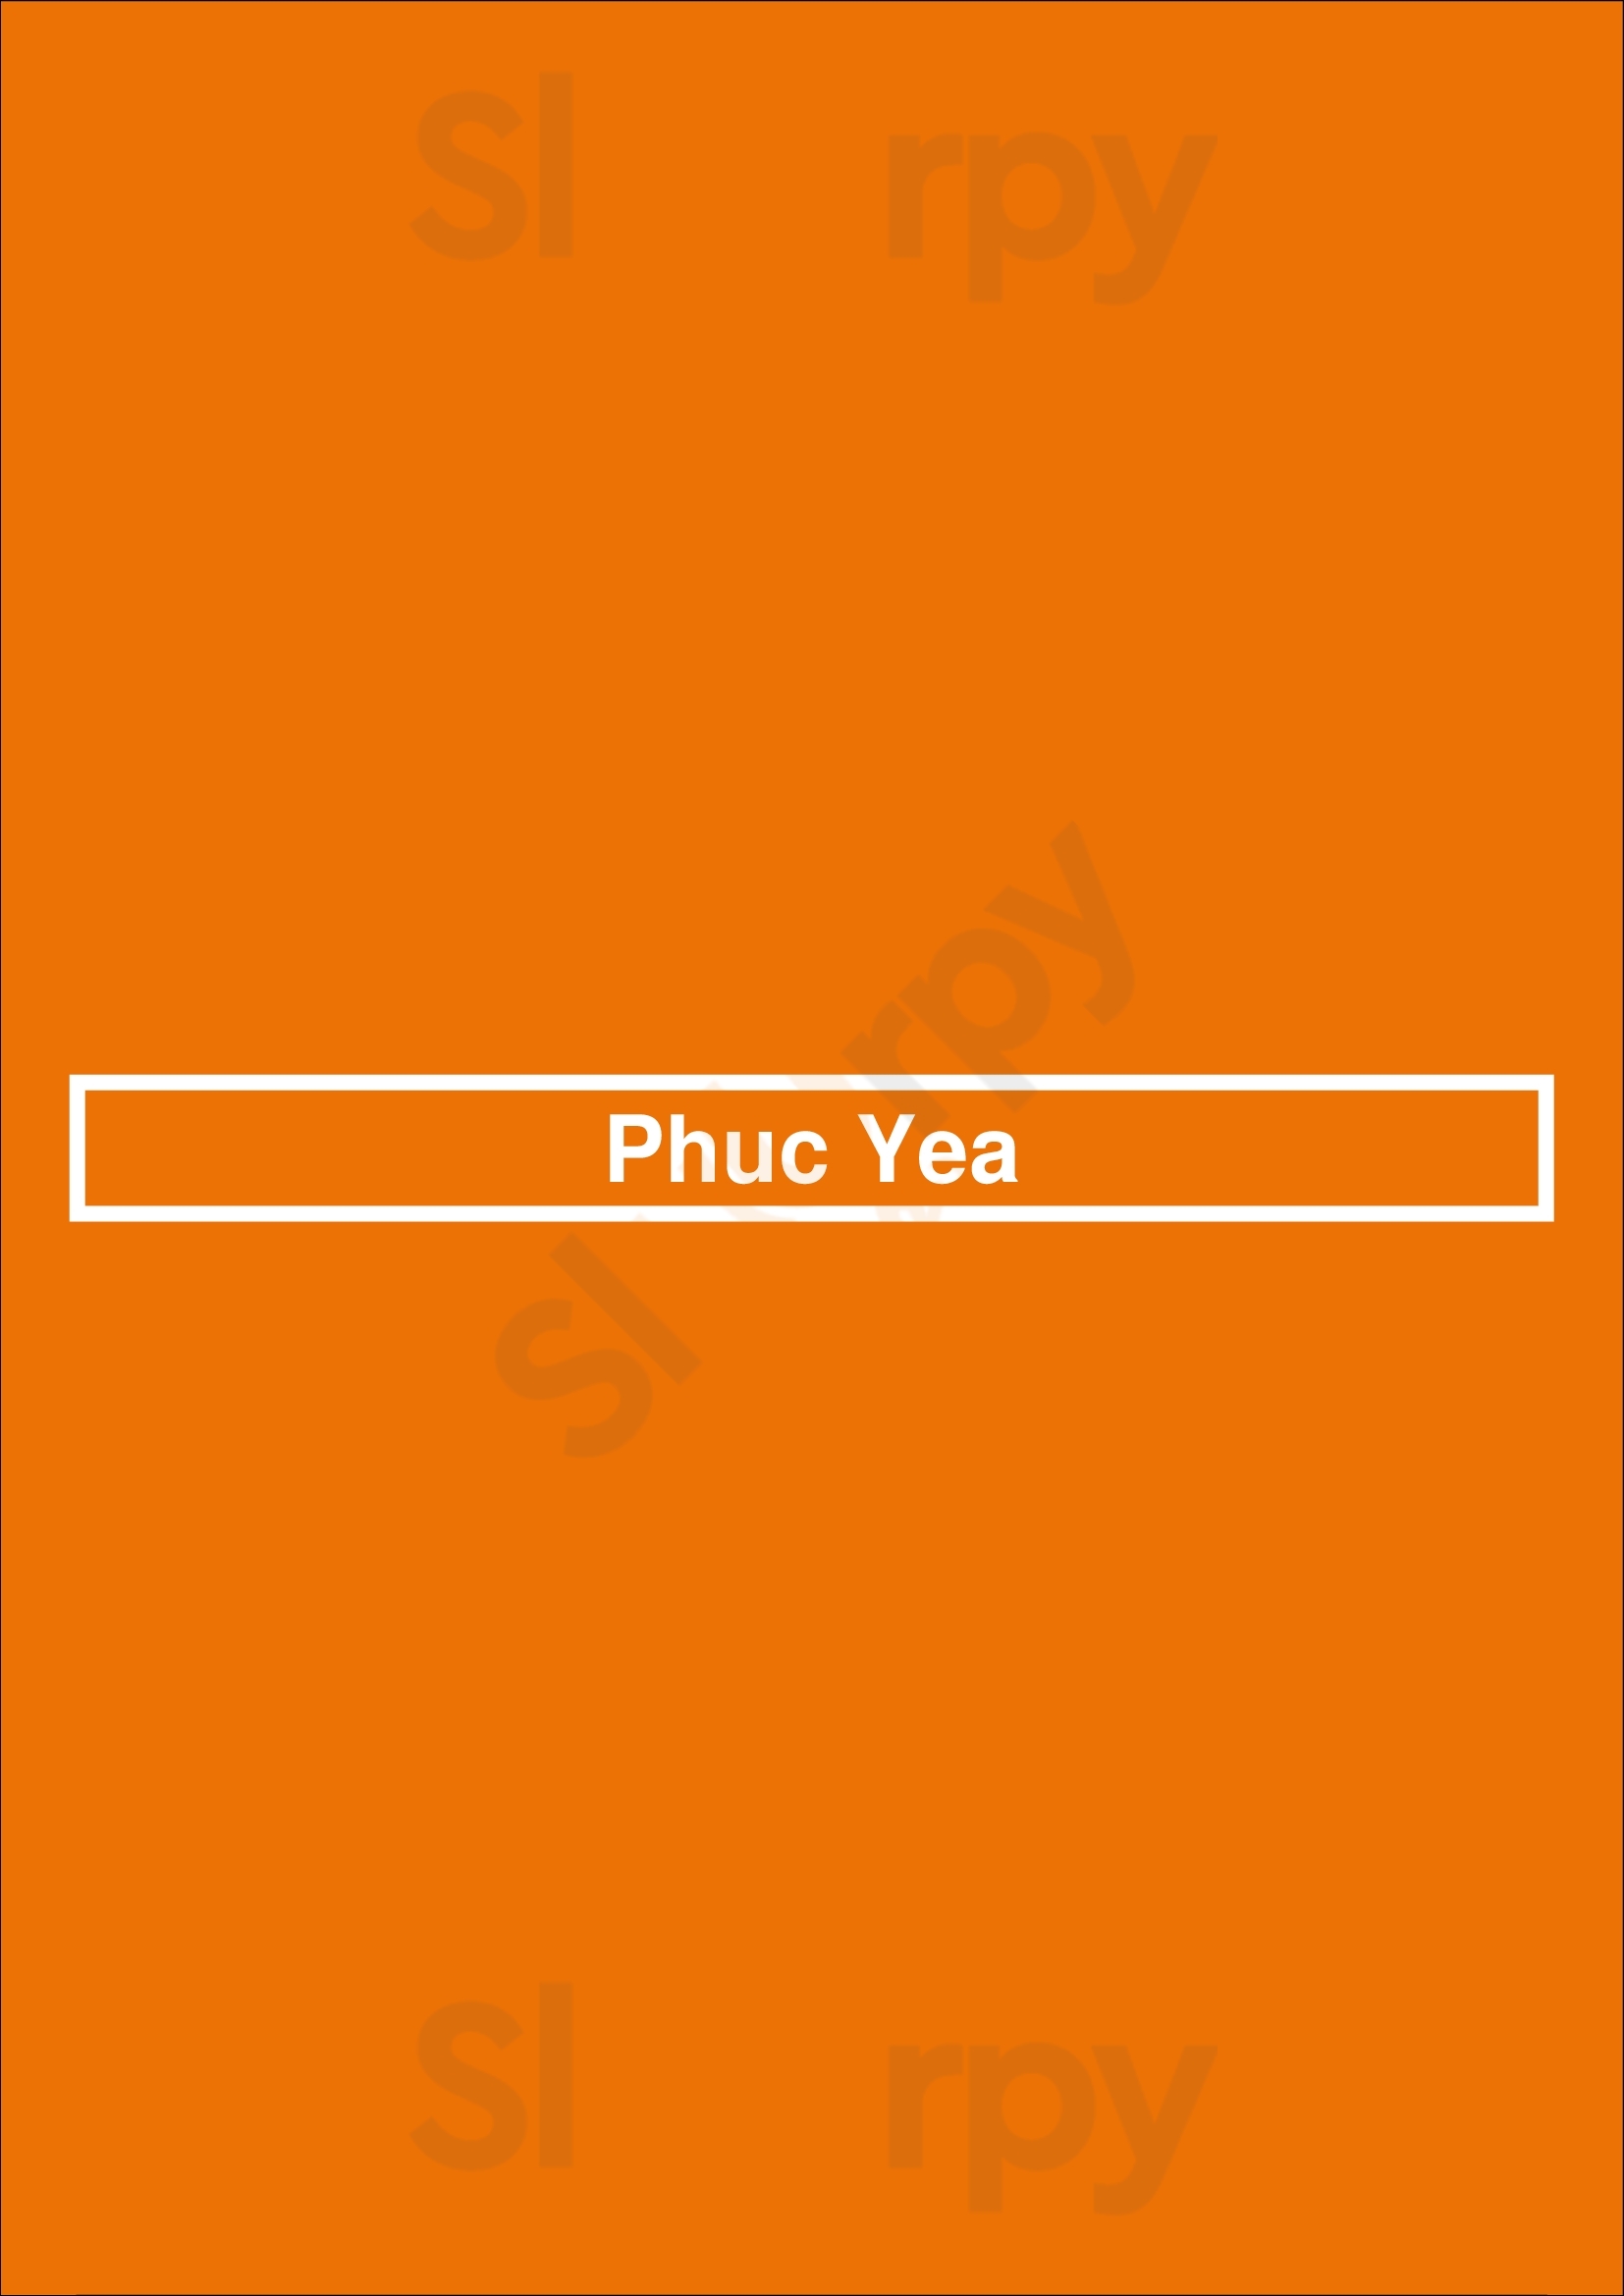 Phuc Yea Miami Menu - 1